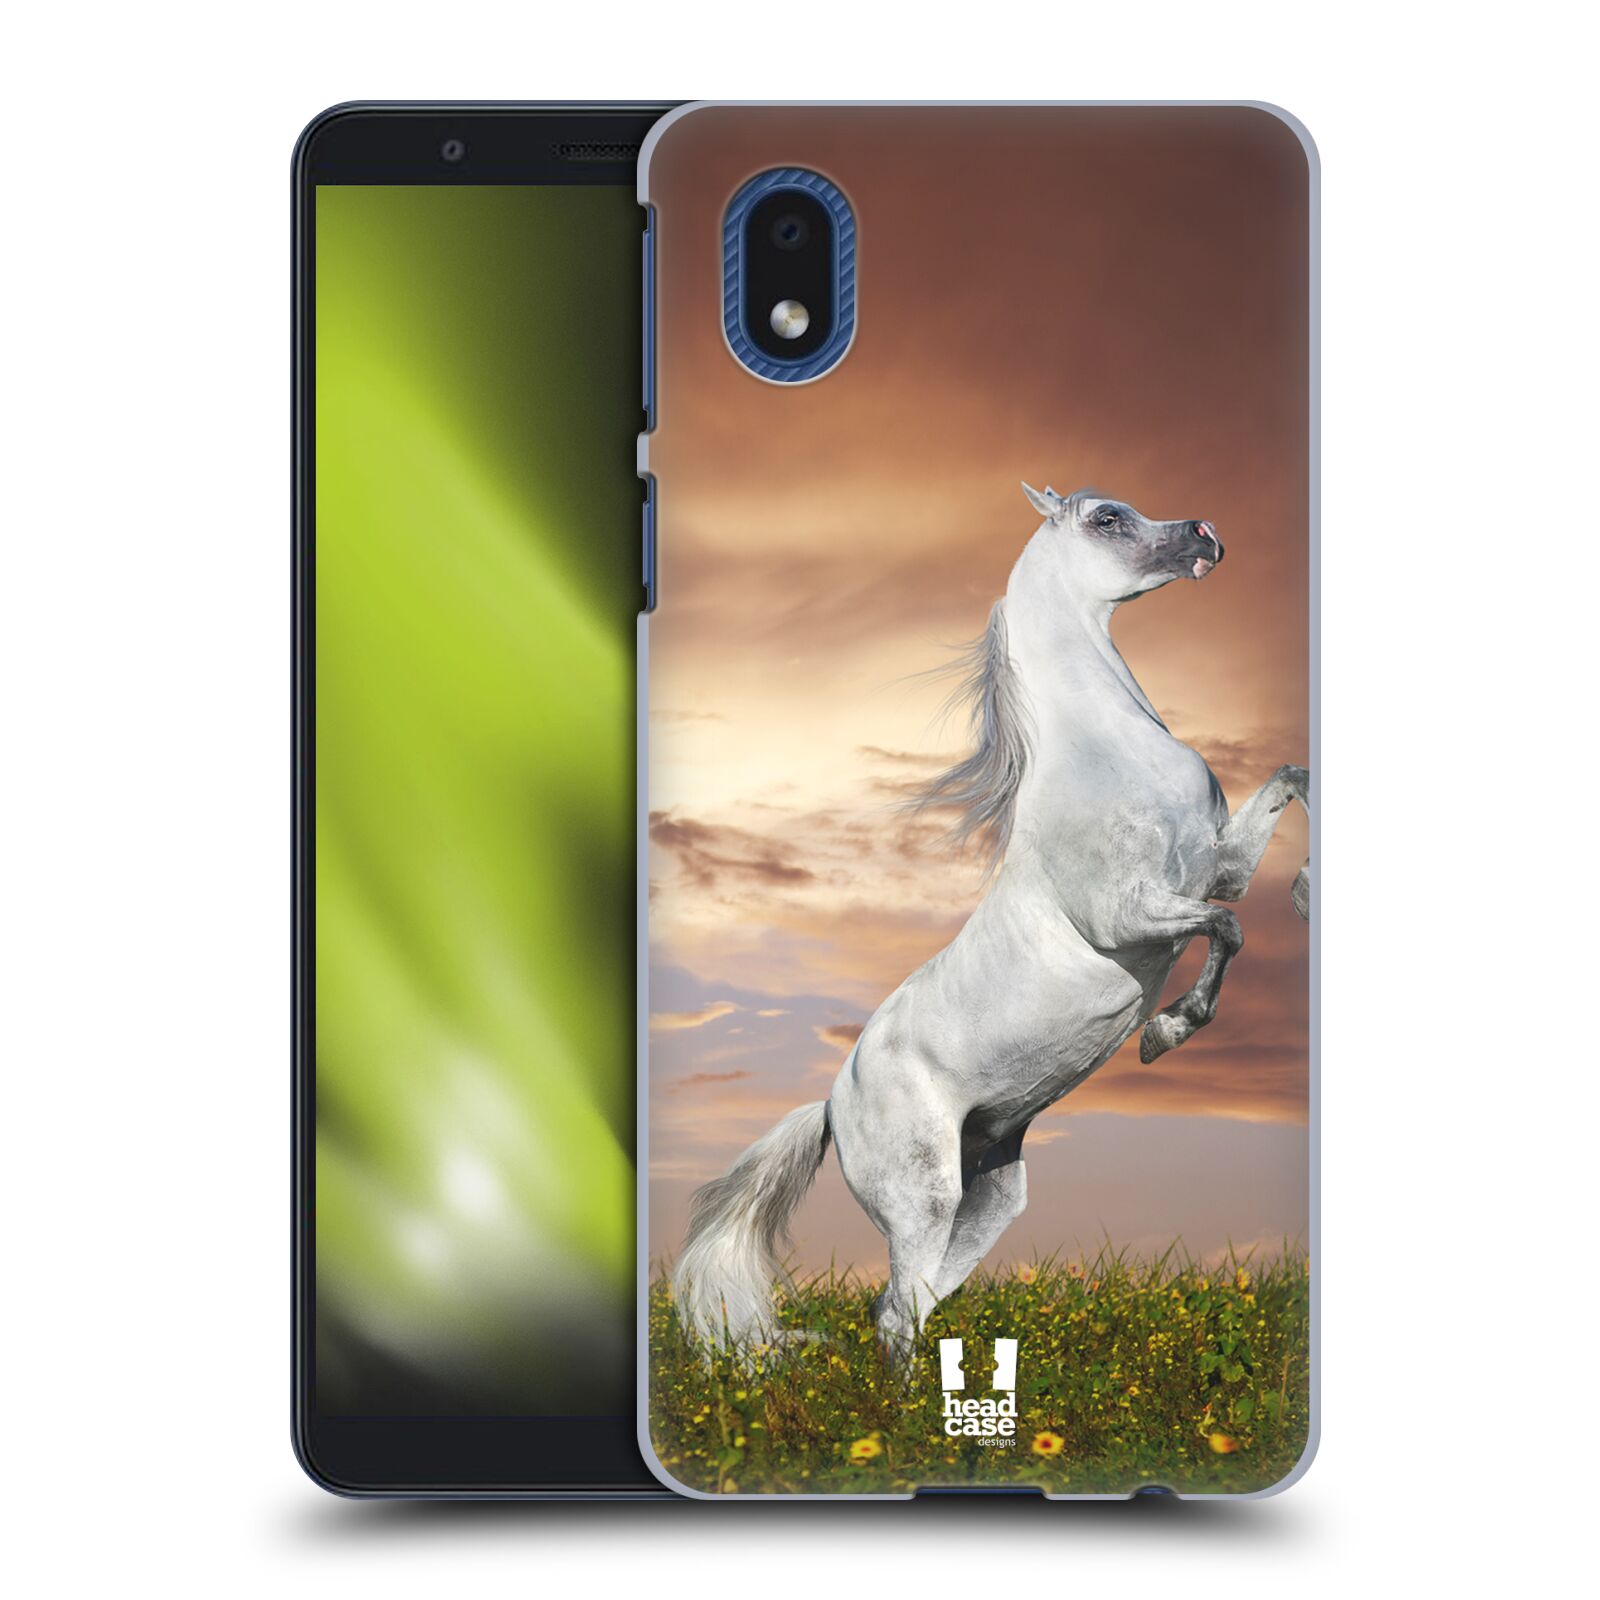 Zadní obal pro mobil Samsung Galaxy A01 CORE - HEAD CASE - Svět zvířat divoký kůň